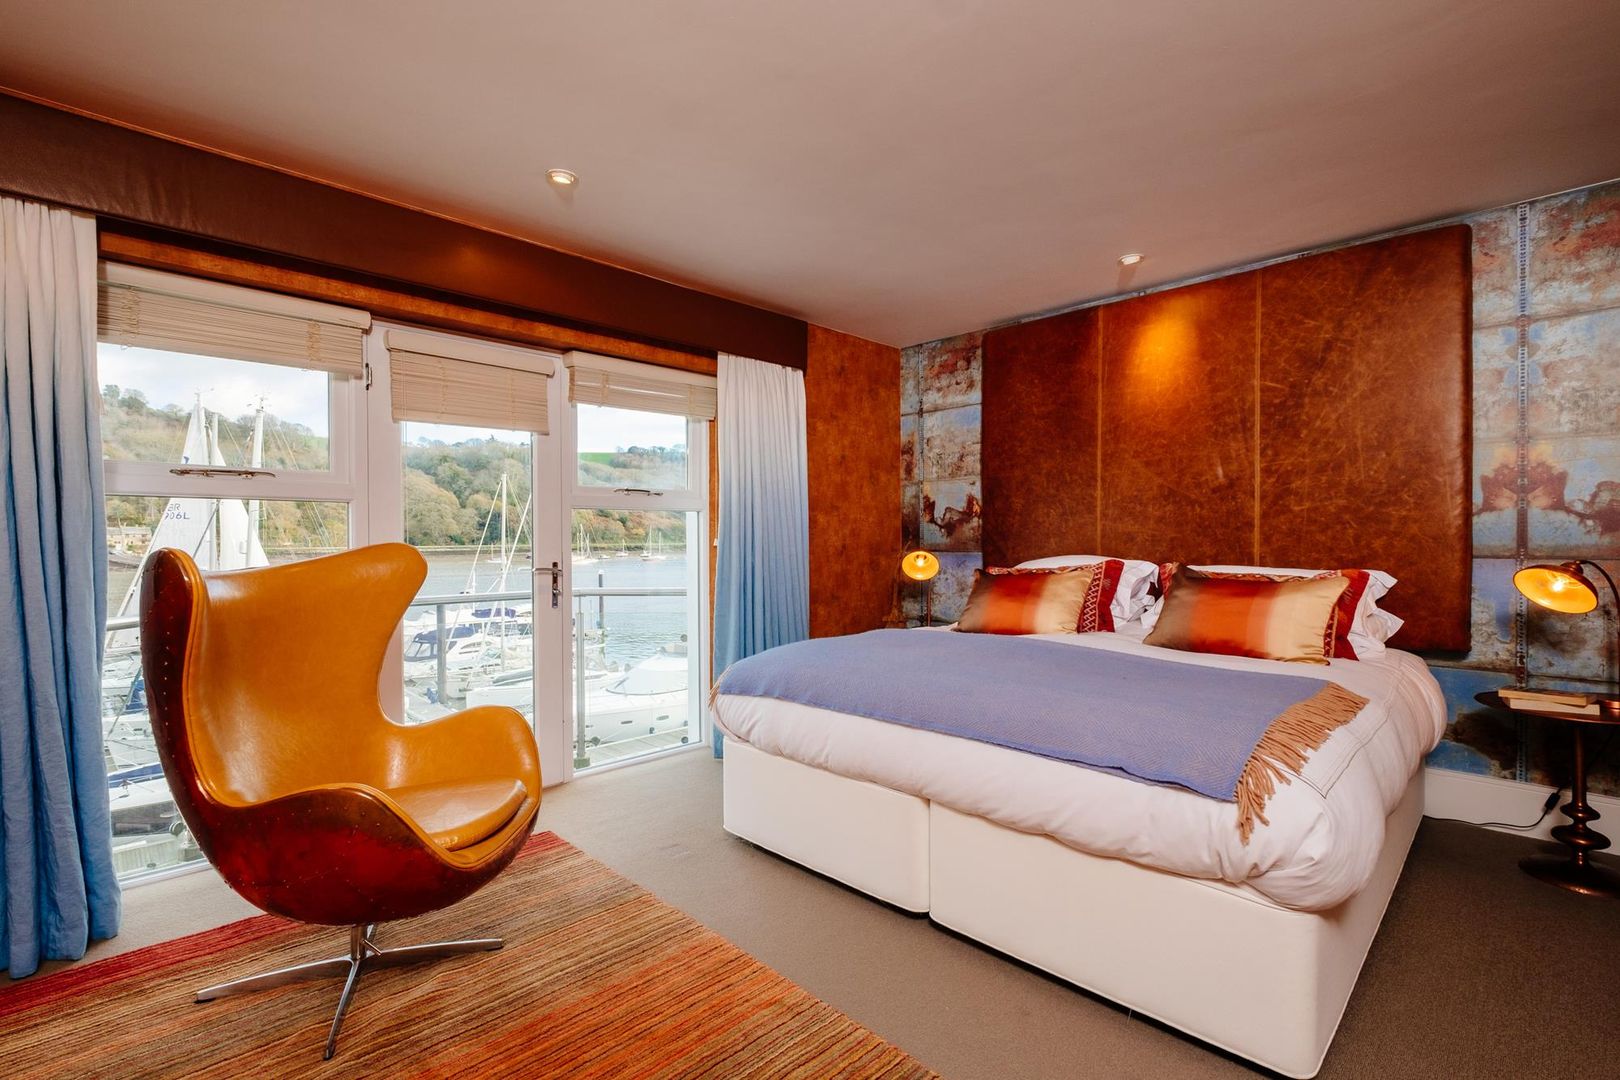 homify Cuartos de estilo ecléctico bedroom,copper,leather,holiday home,sea views,balcony